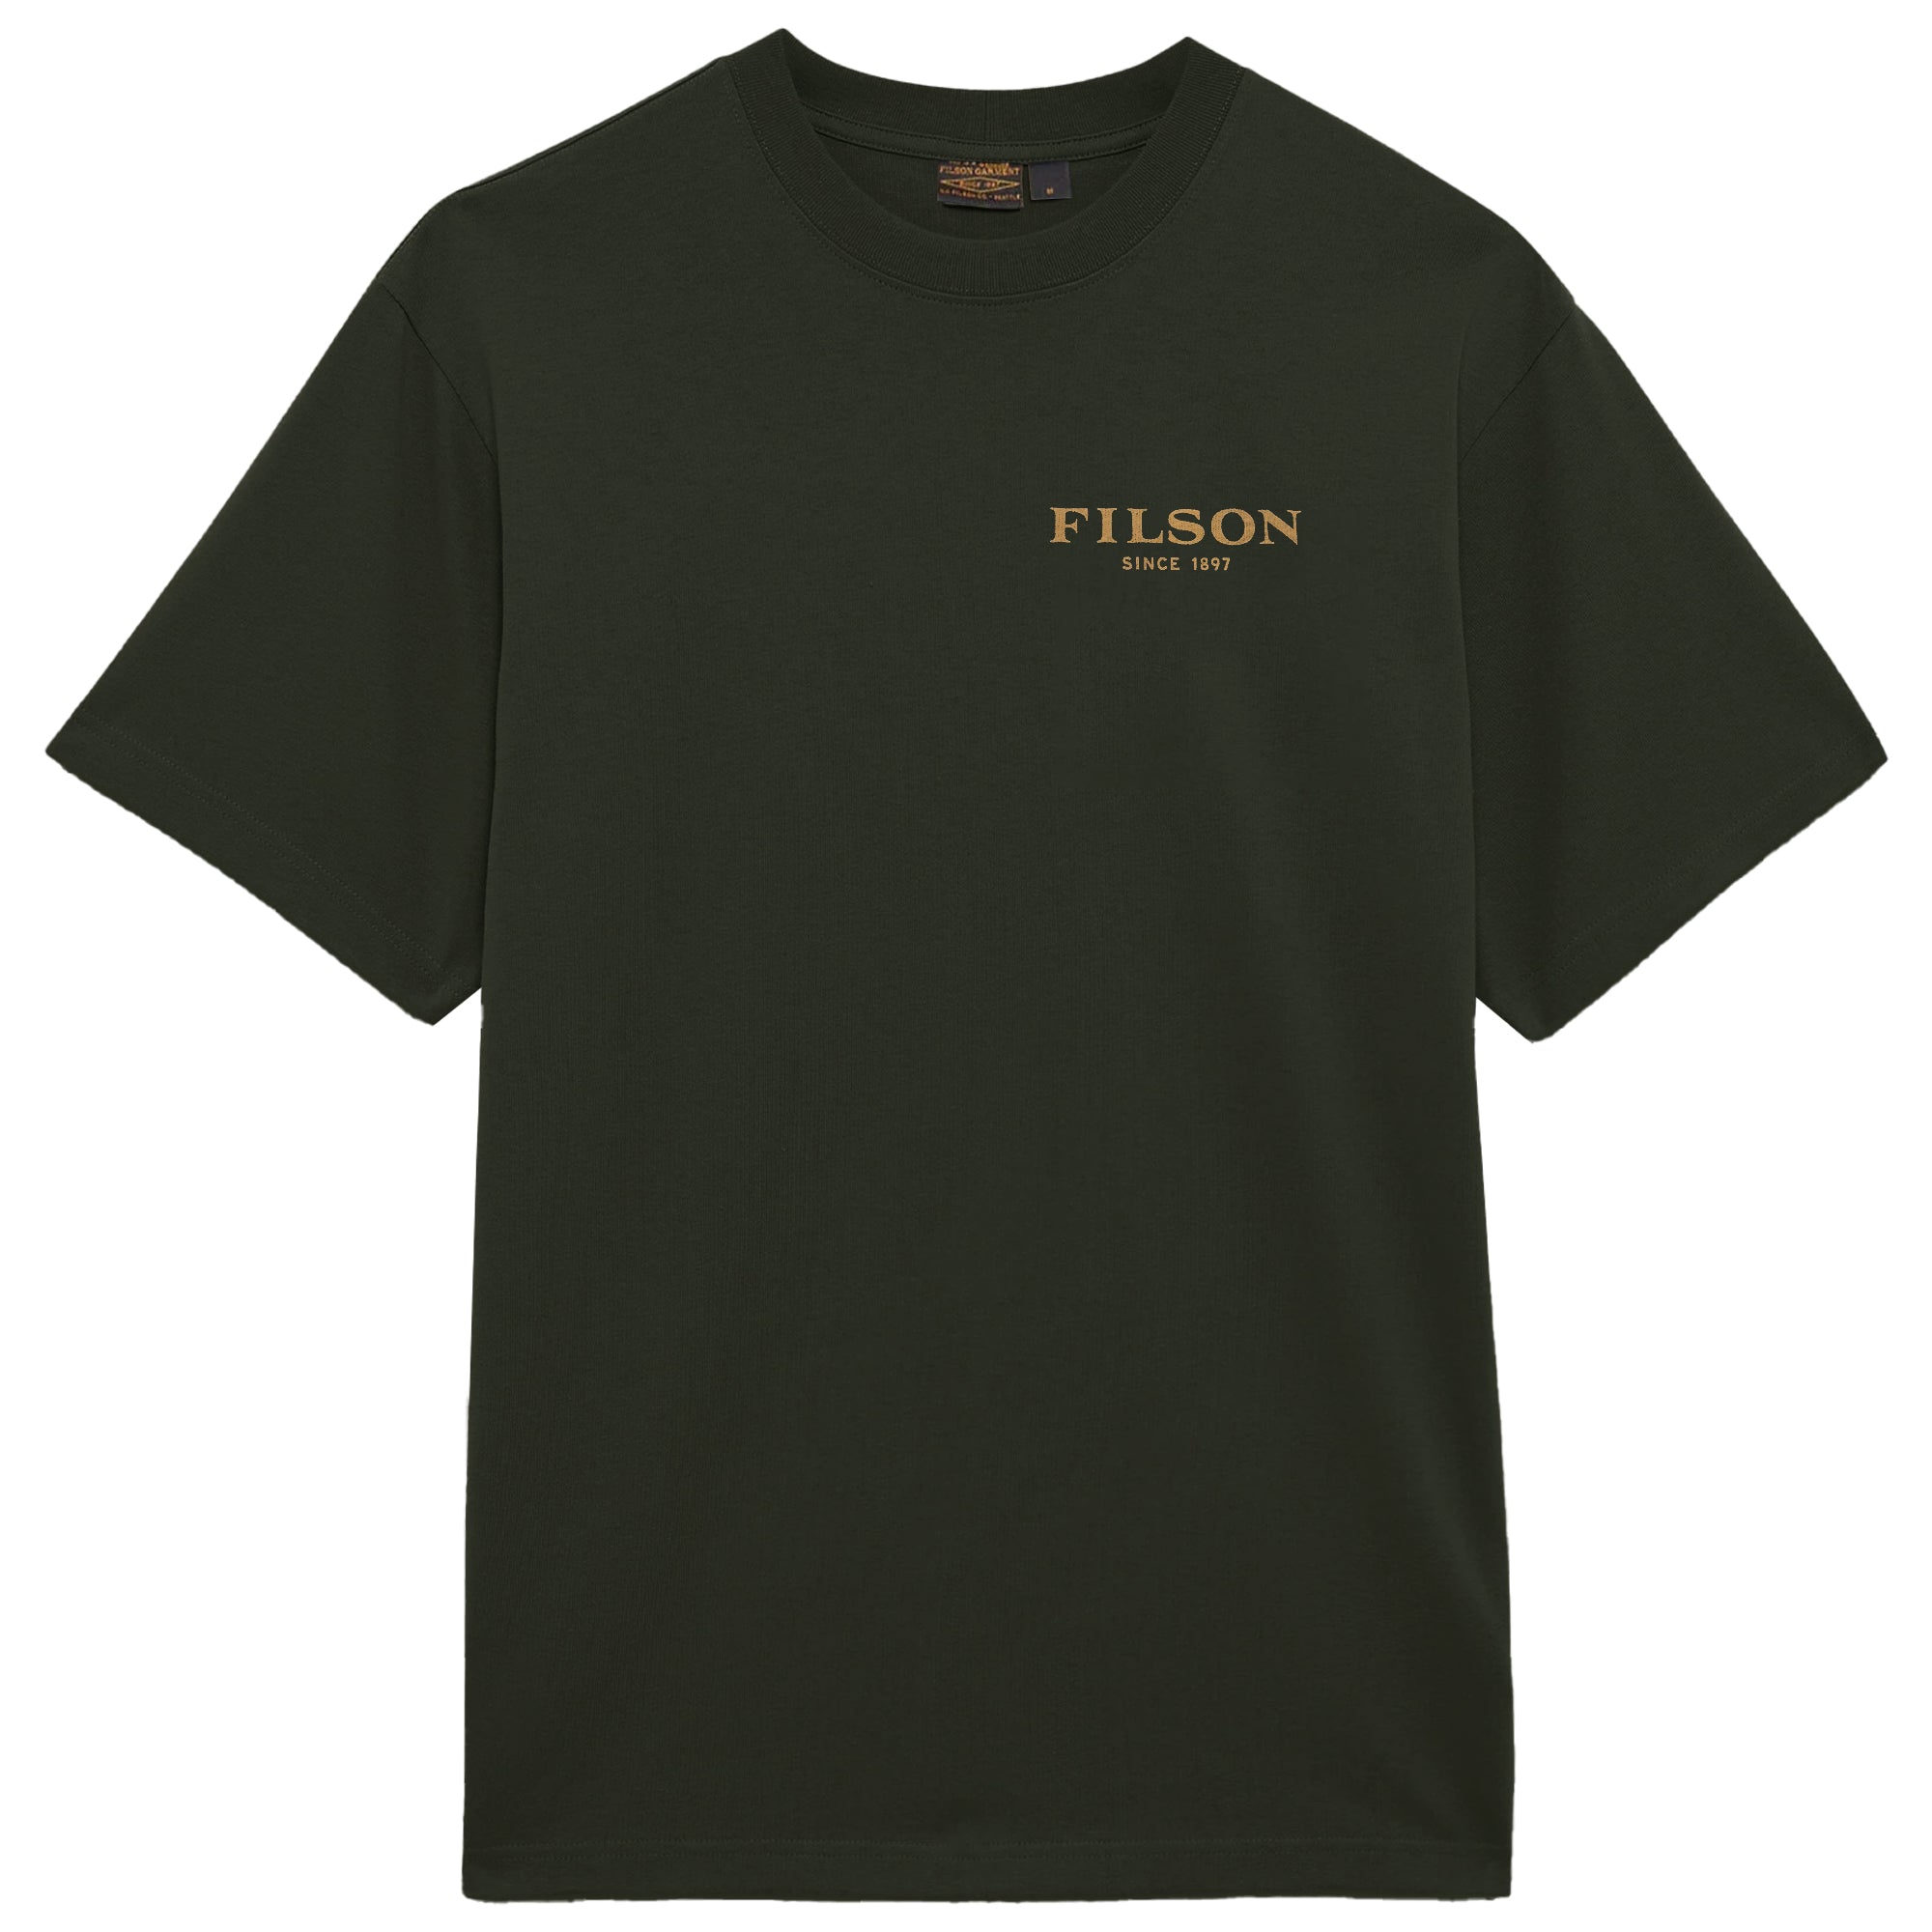 Filson Frontier Graphic T-Shirt - Rosin/Beige